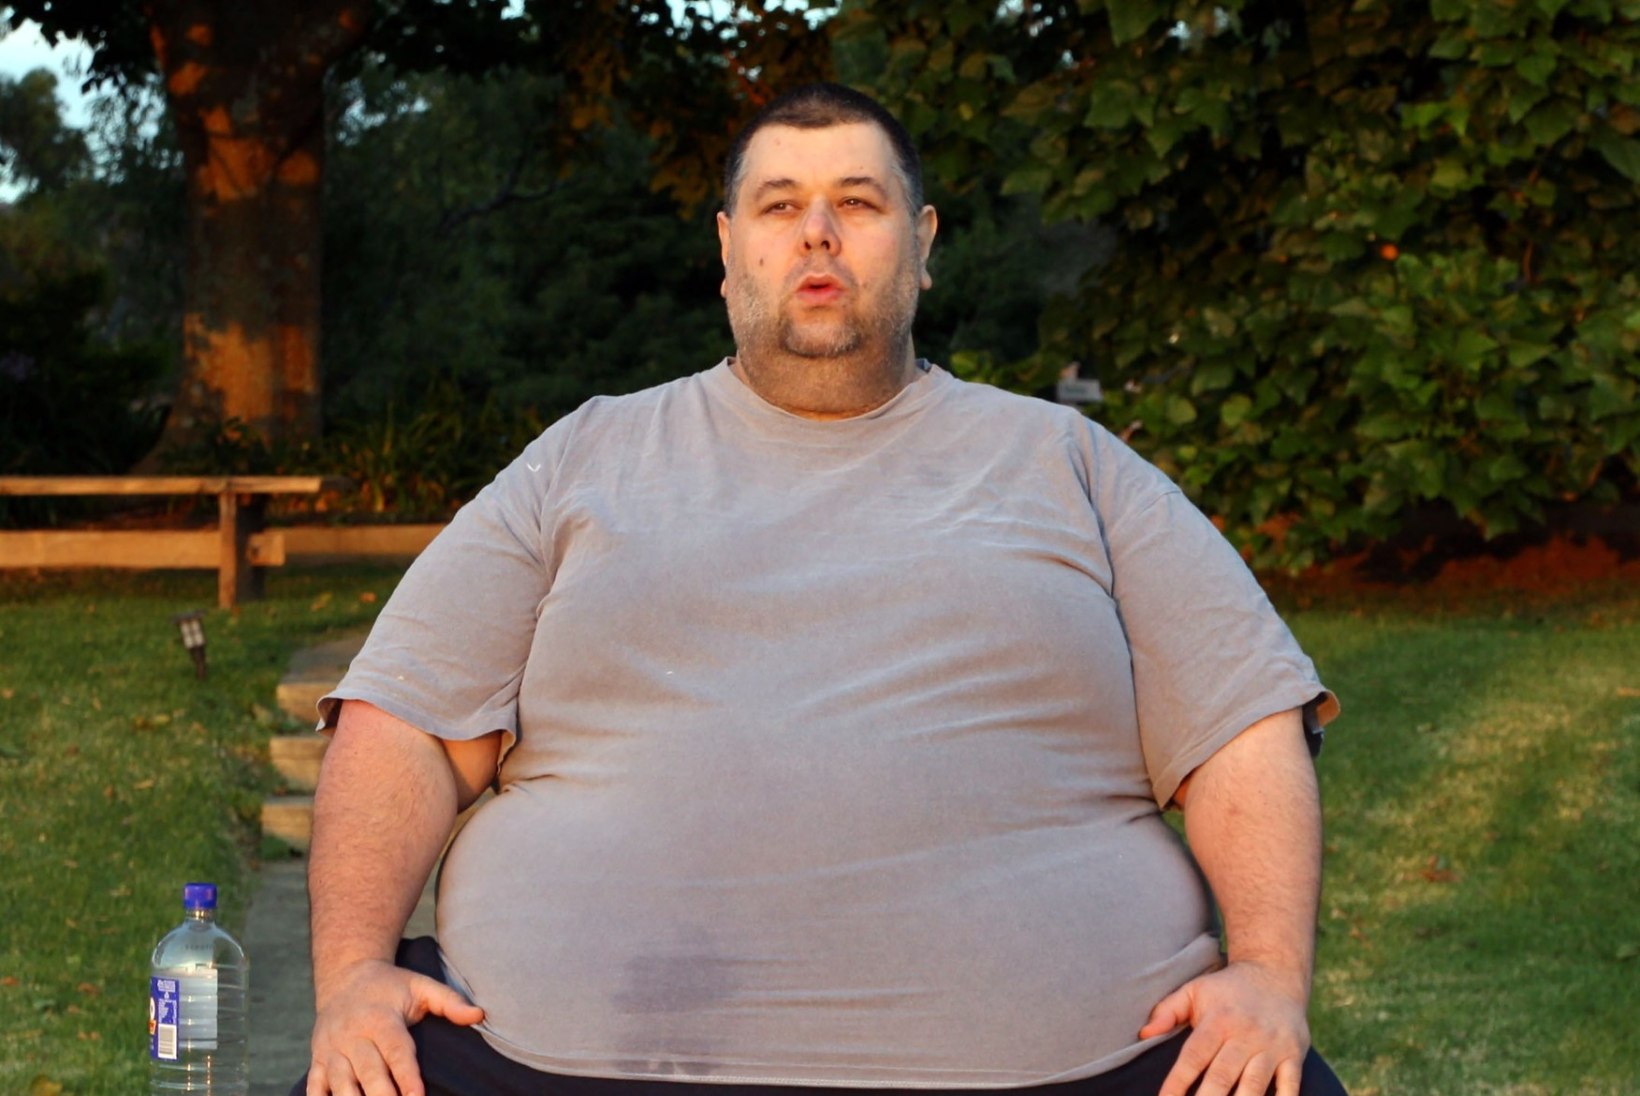 FOTOD: paksim austraallane kaotas kaalust 207 kilogrammi